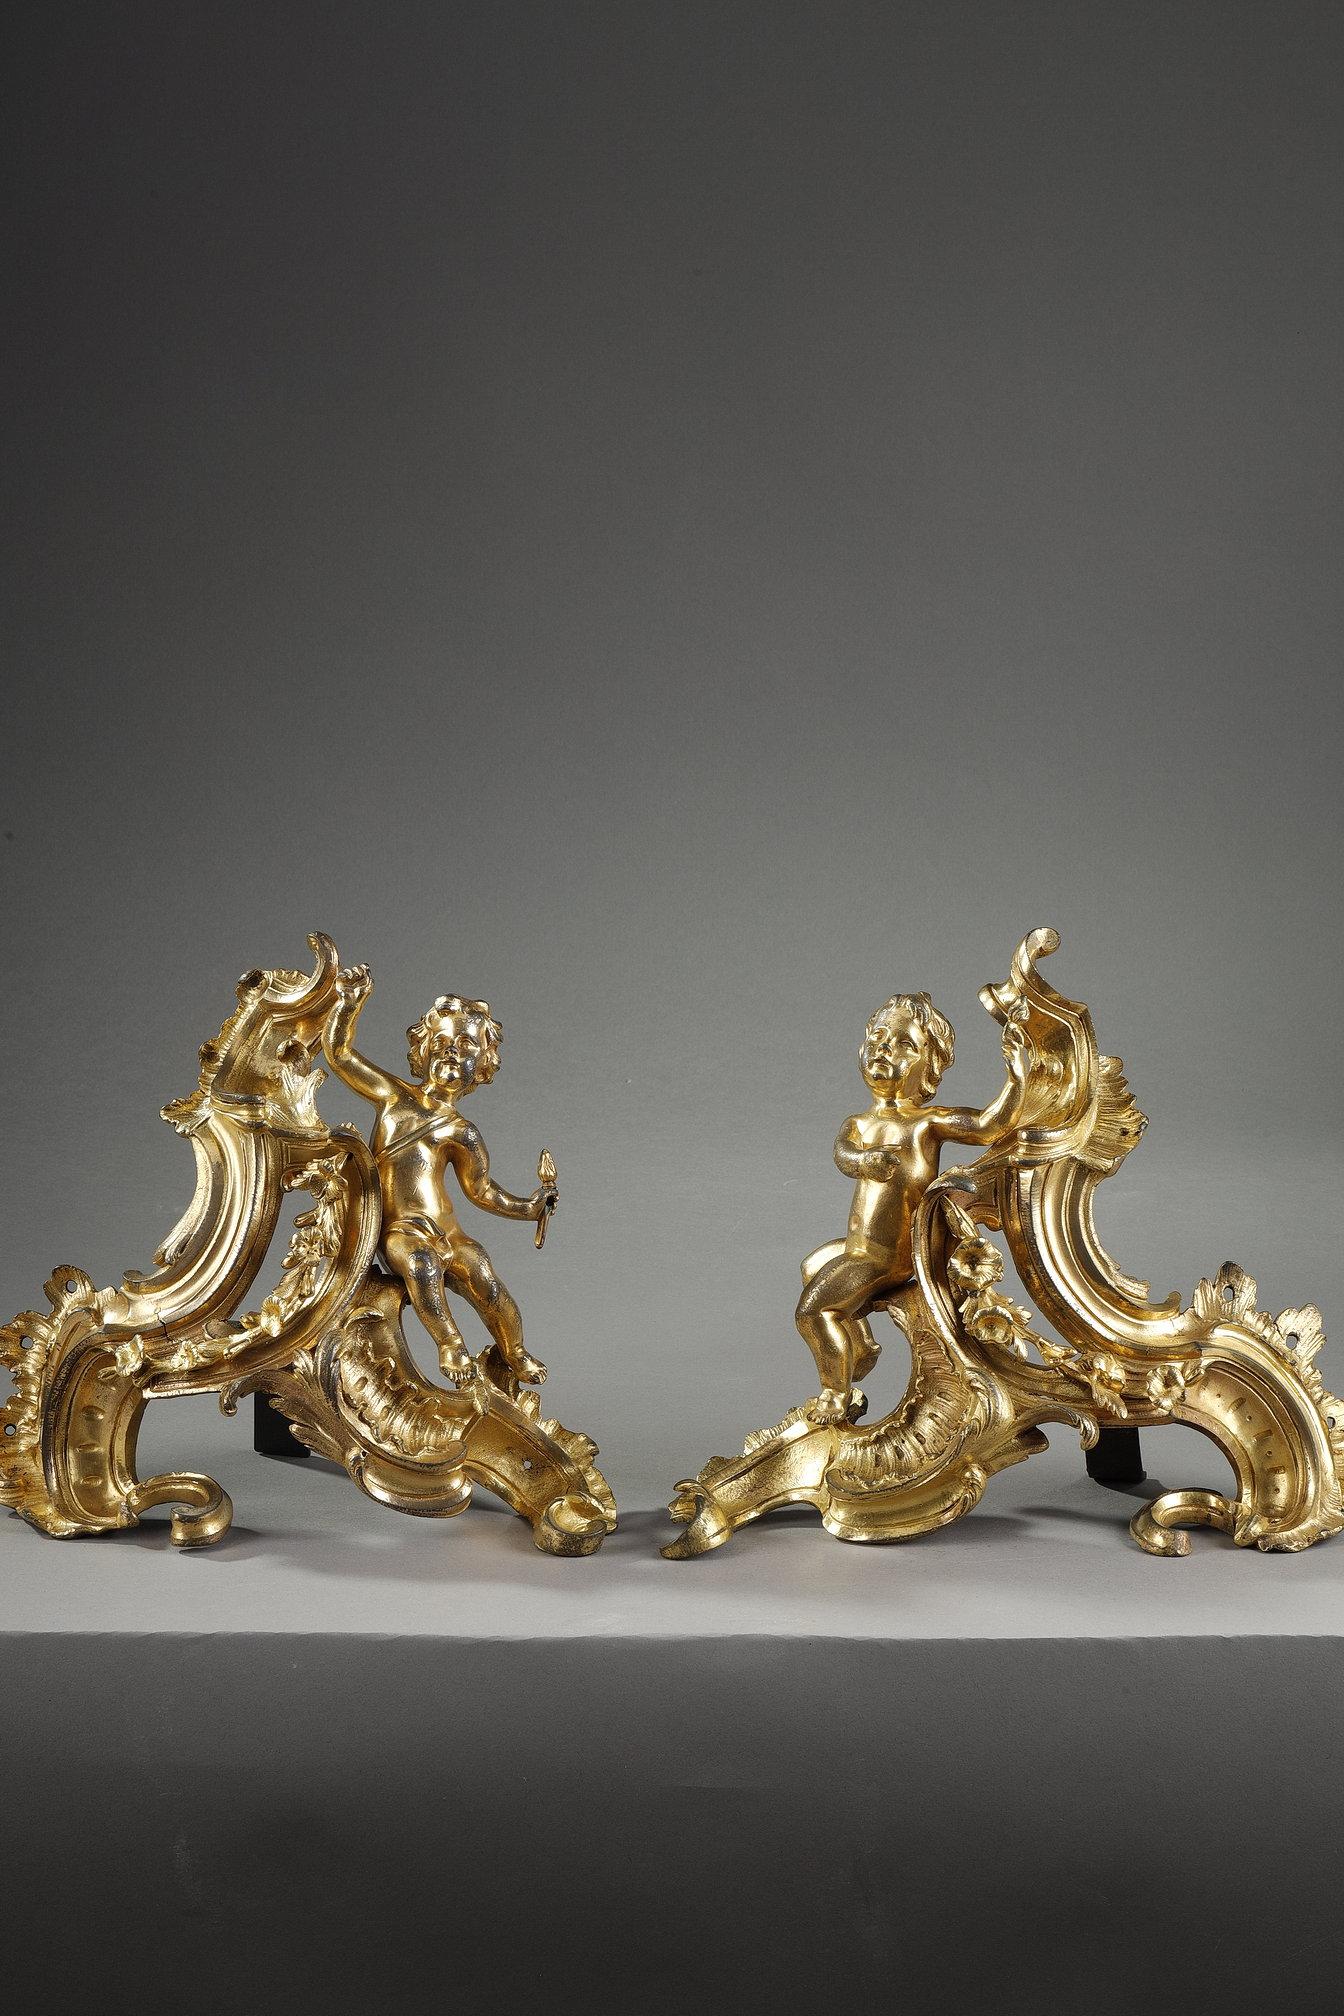 Schönes Paar Quecksilber-Ormolu-Andirons aus der Louis XV-Periode. Die beiden symmetrischen, hängenden Putten sitzen auf Blattrollen.

Die Andirons boten den Bronzemachern unter Ludwig XV. die Möglichkeit, ihrer Fantasie freien Lauf zu lassen, indem